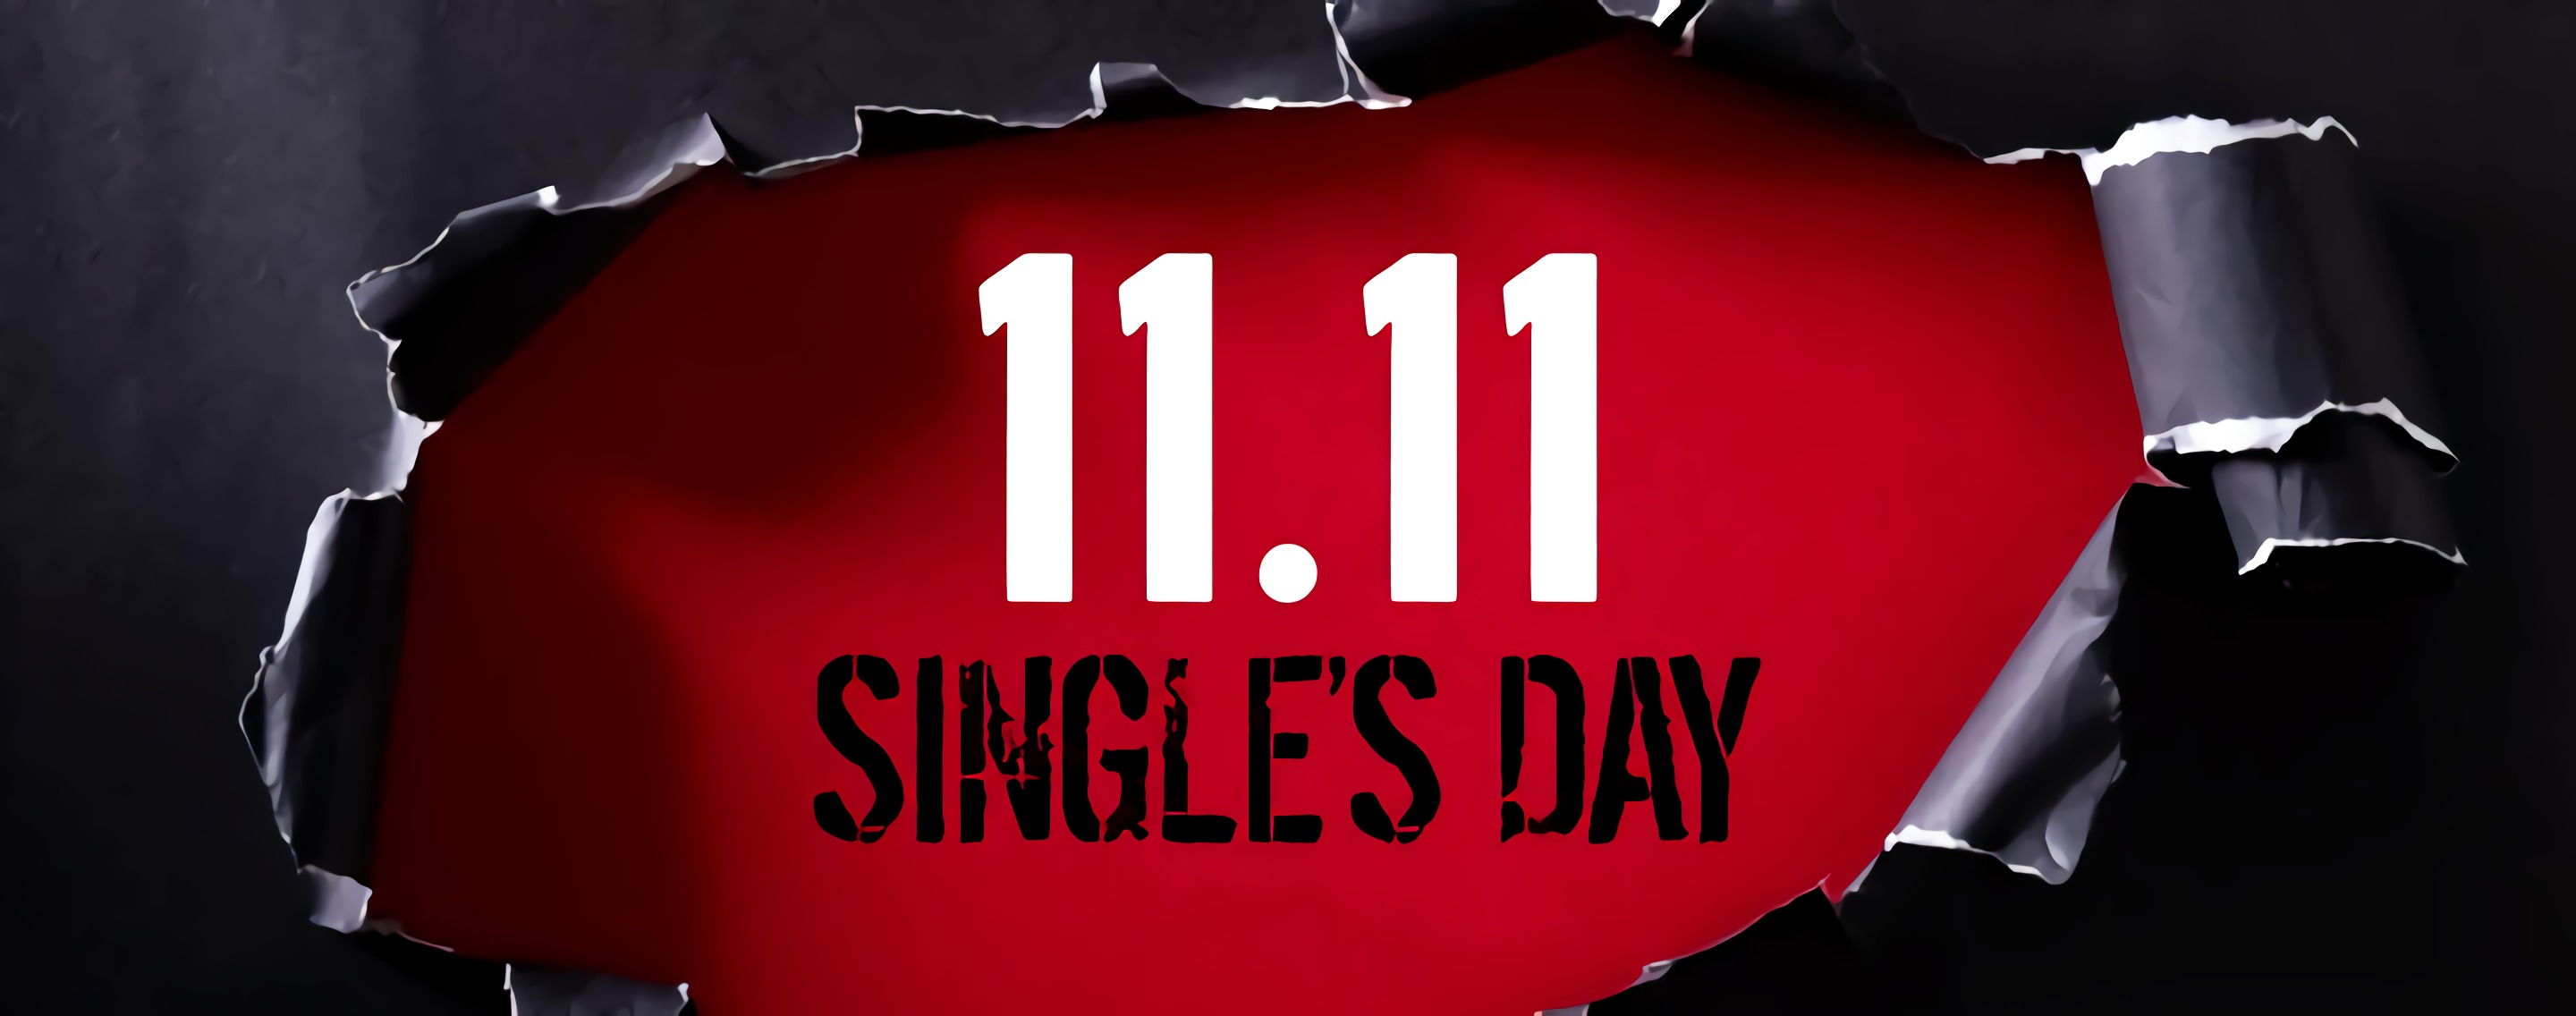  Dénichez les meilleures promo du Single Day © siam.pukkato / Shutterstock.com